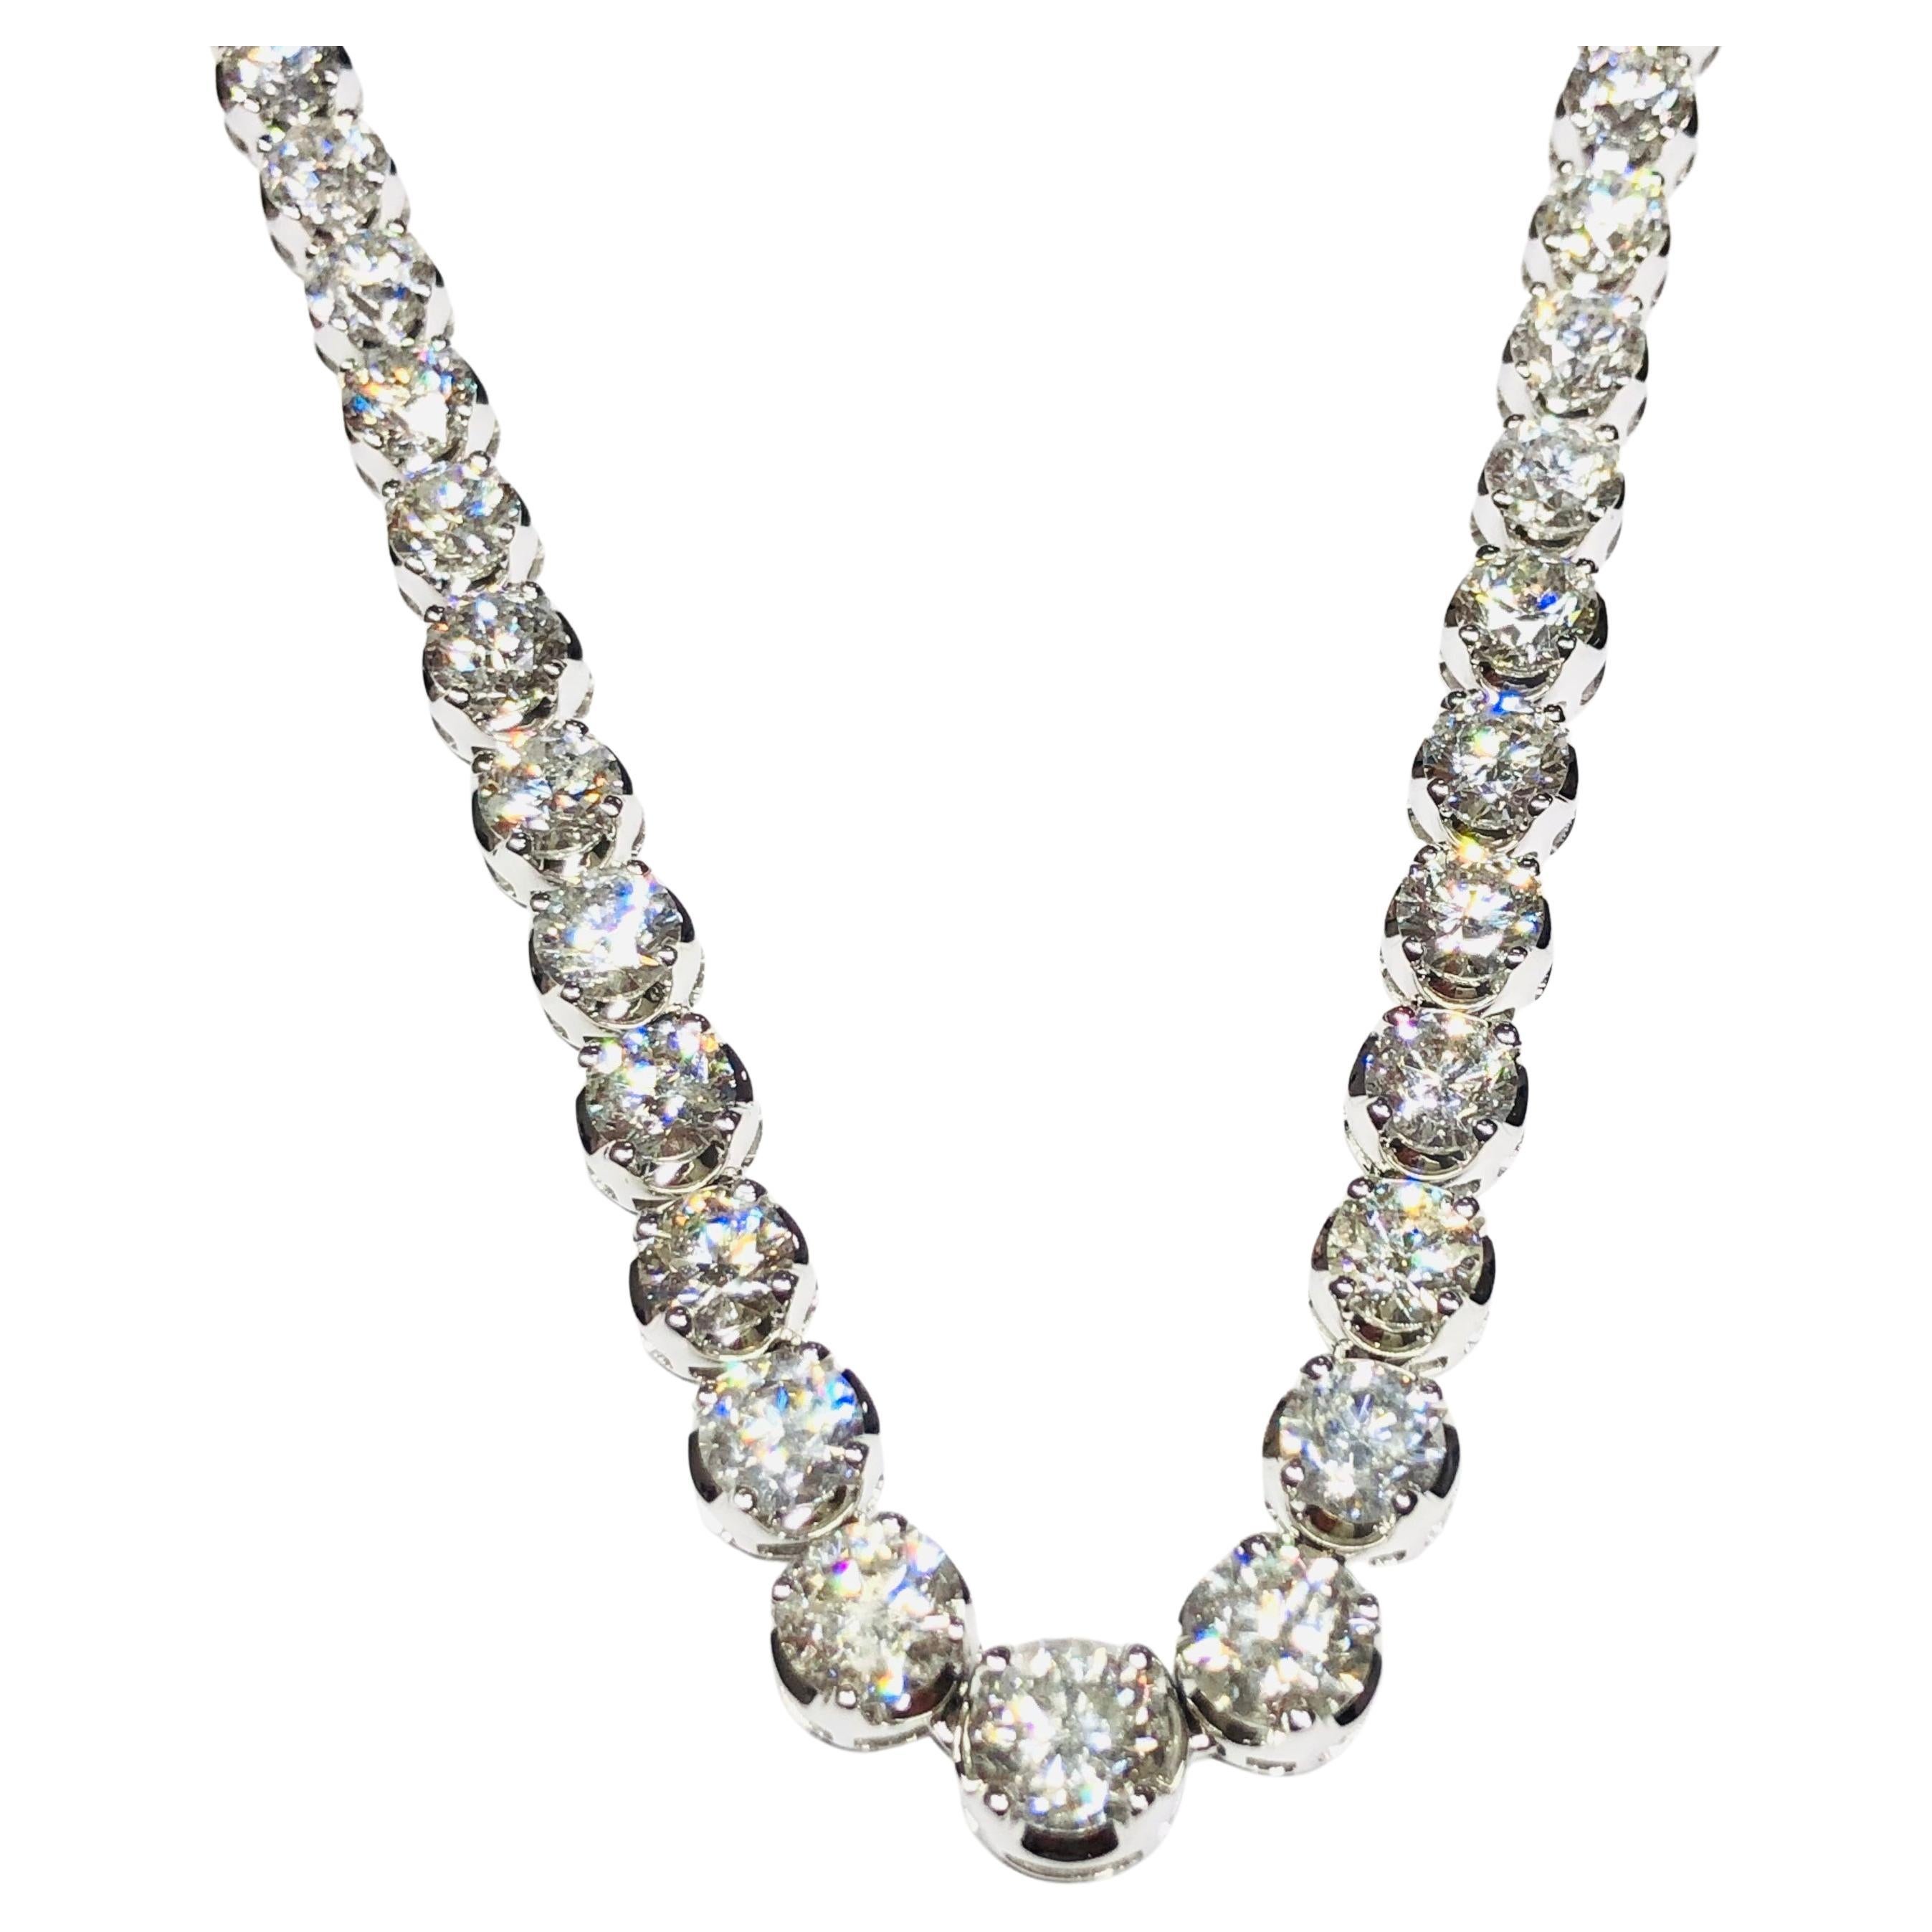 Un impressionnant collier de tennis Riviera classique qui présente un poids total de 32,42 carats de diamants ronds et brillants magnifiquement gradués, d'une couleur blanche étincelante, d'une pureté SI, propres à l'oeil. Chaque pierre est sertie